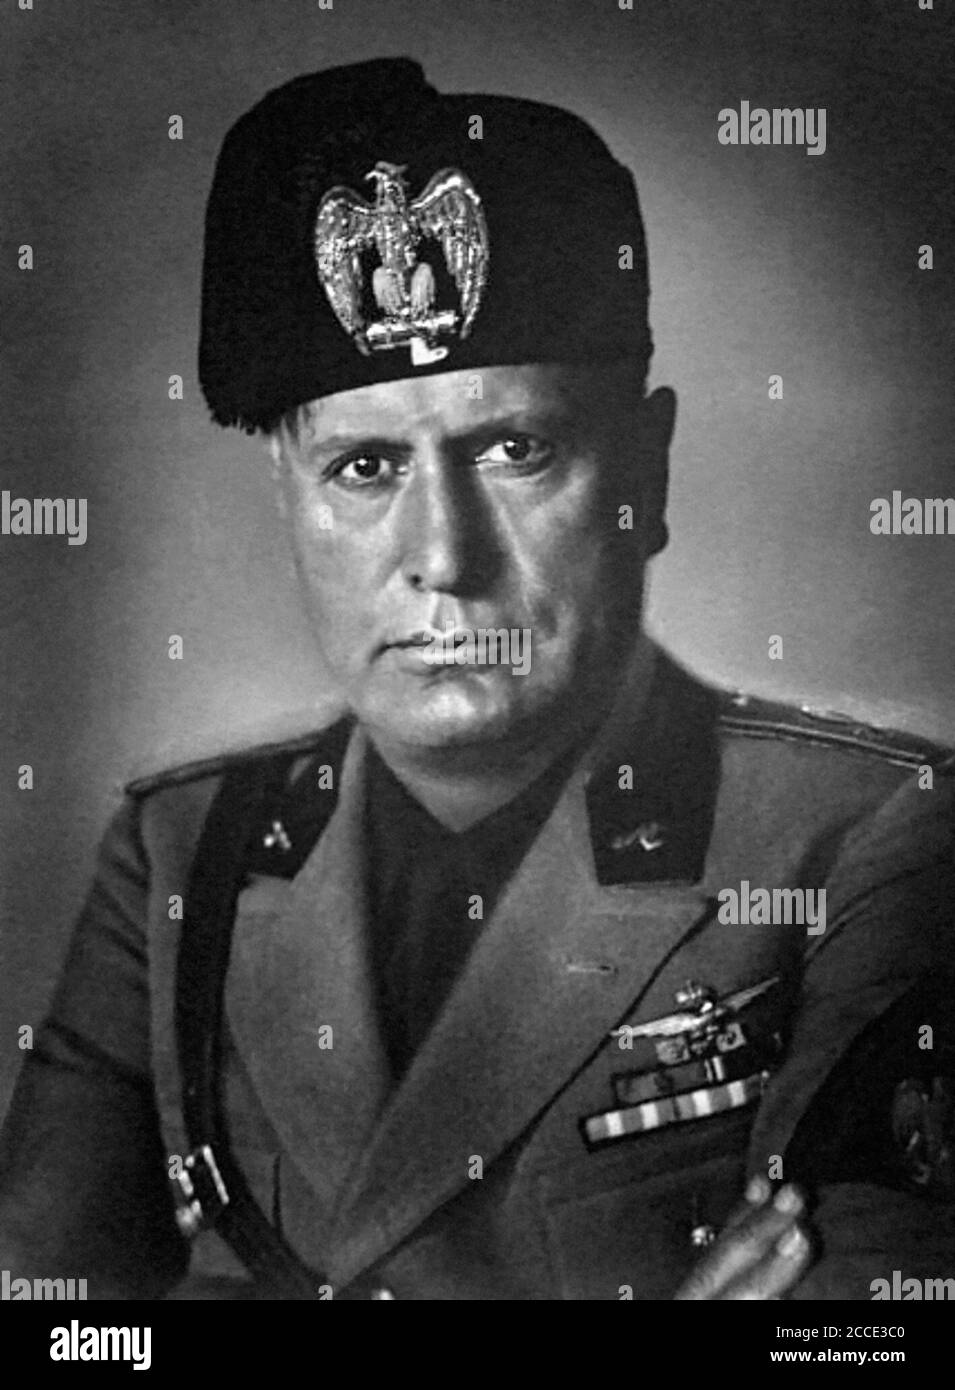 Benito Amilcare Andrea Mussolini (1883-1945), le dictateur fasciste italien, en uniforme. Photo c.1930 Banque D'Images